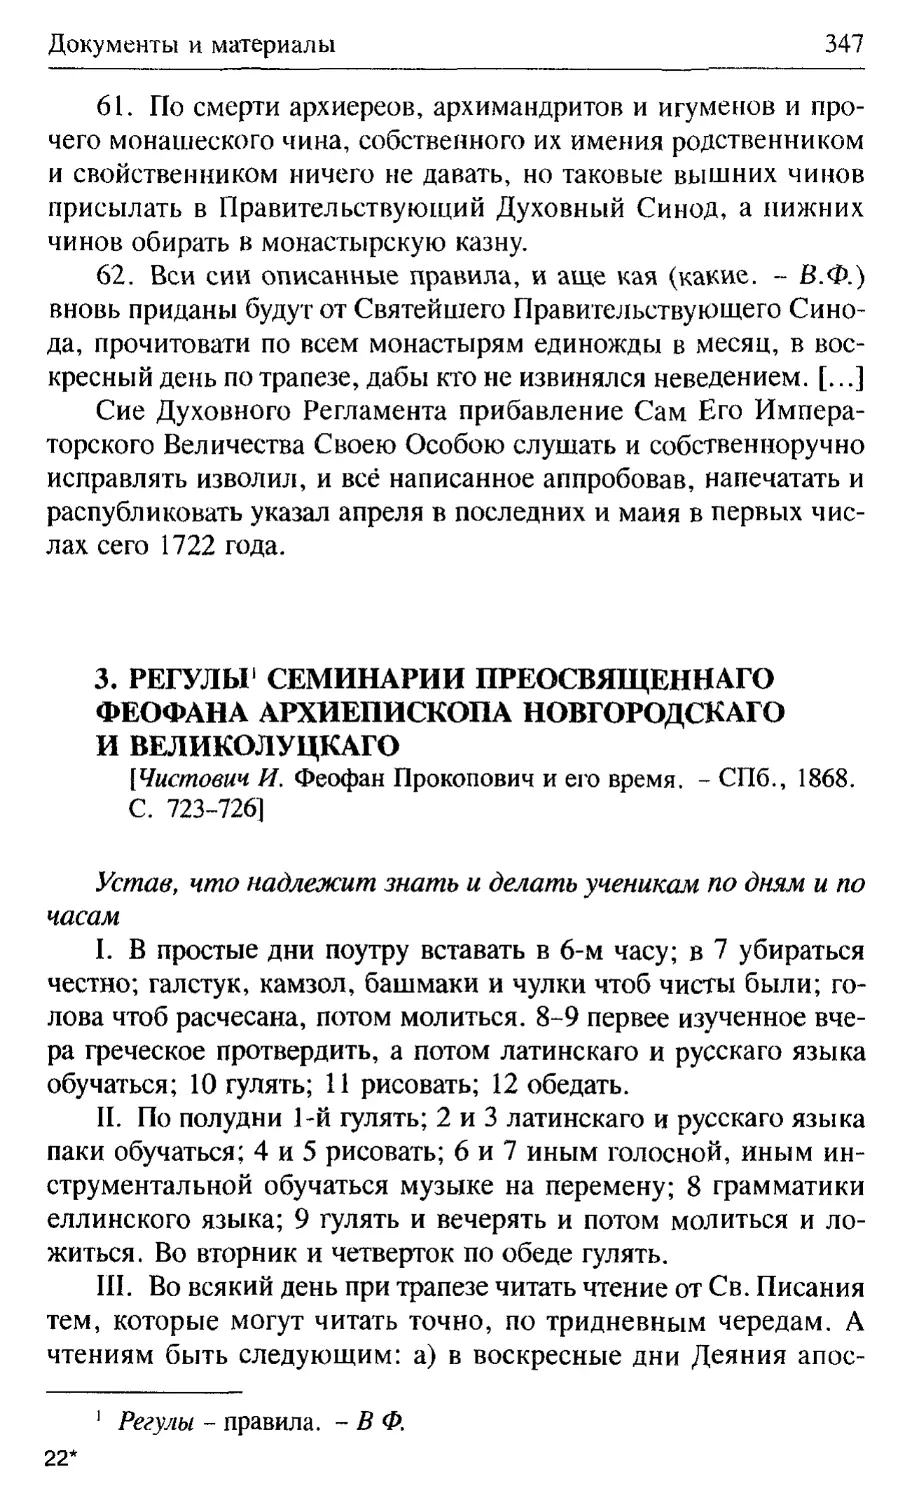 Регулы семинарии Преосвященнаго Феофана, архиепископа Новгородскаго и Великолуцкаго